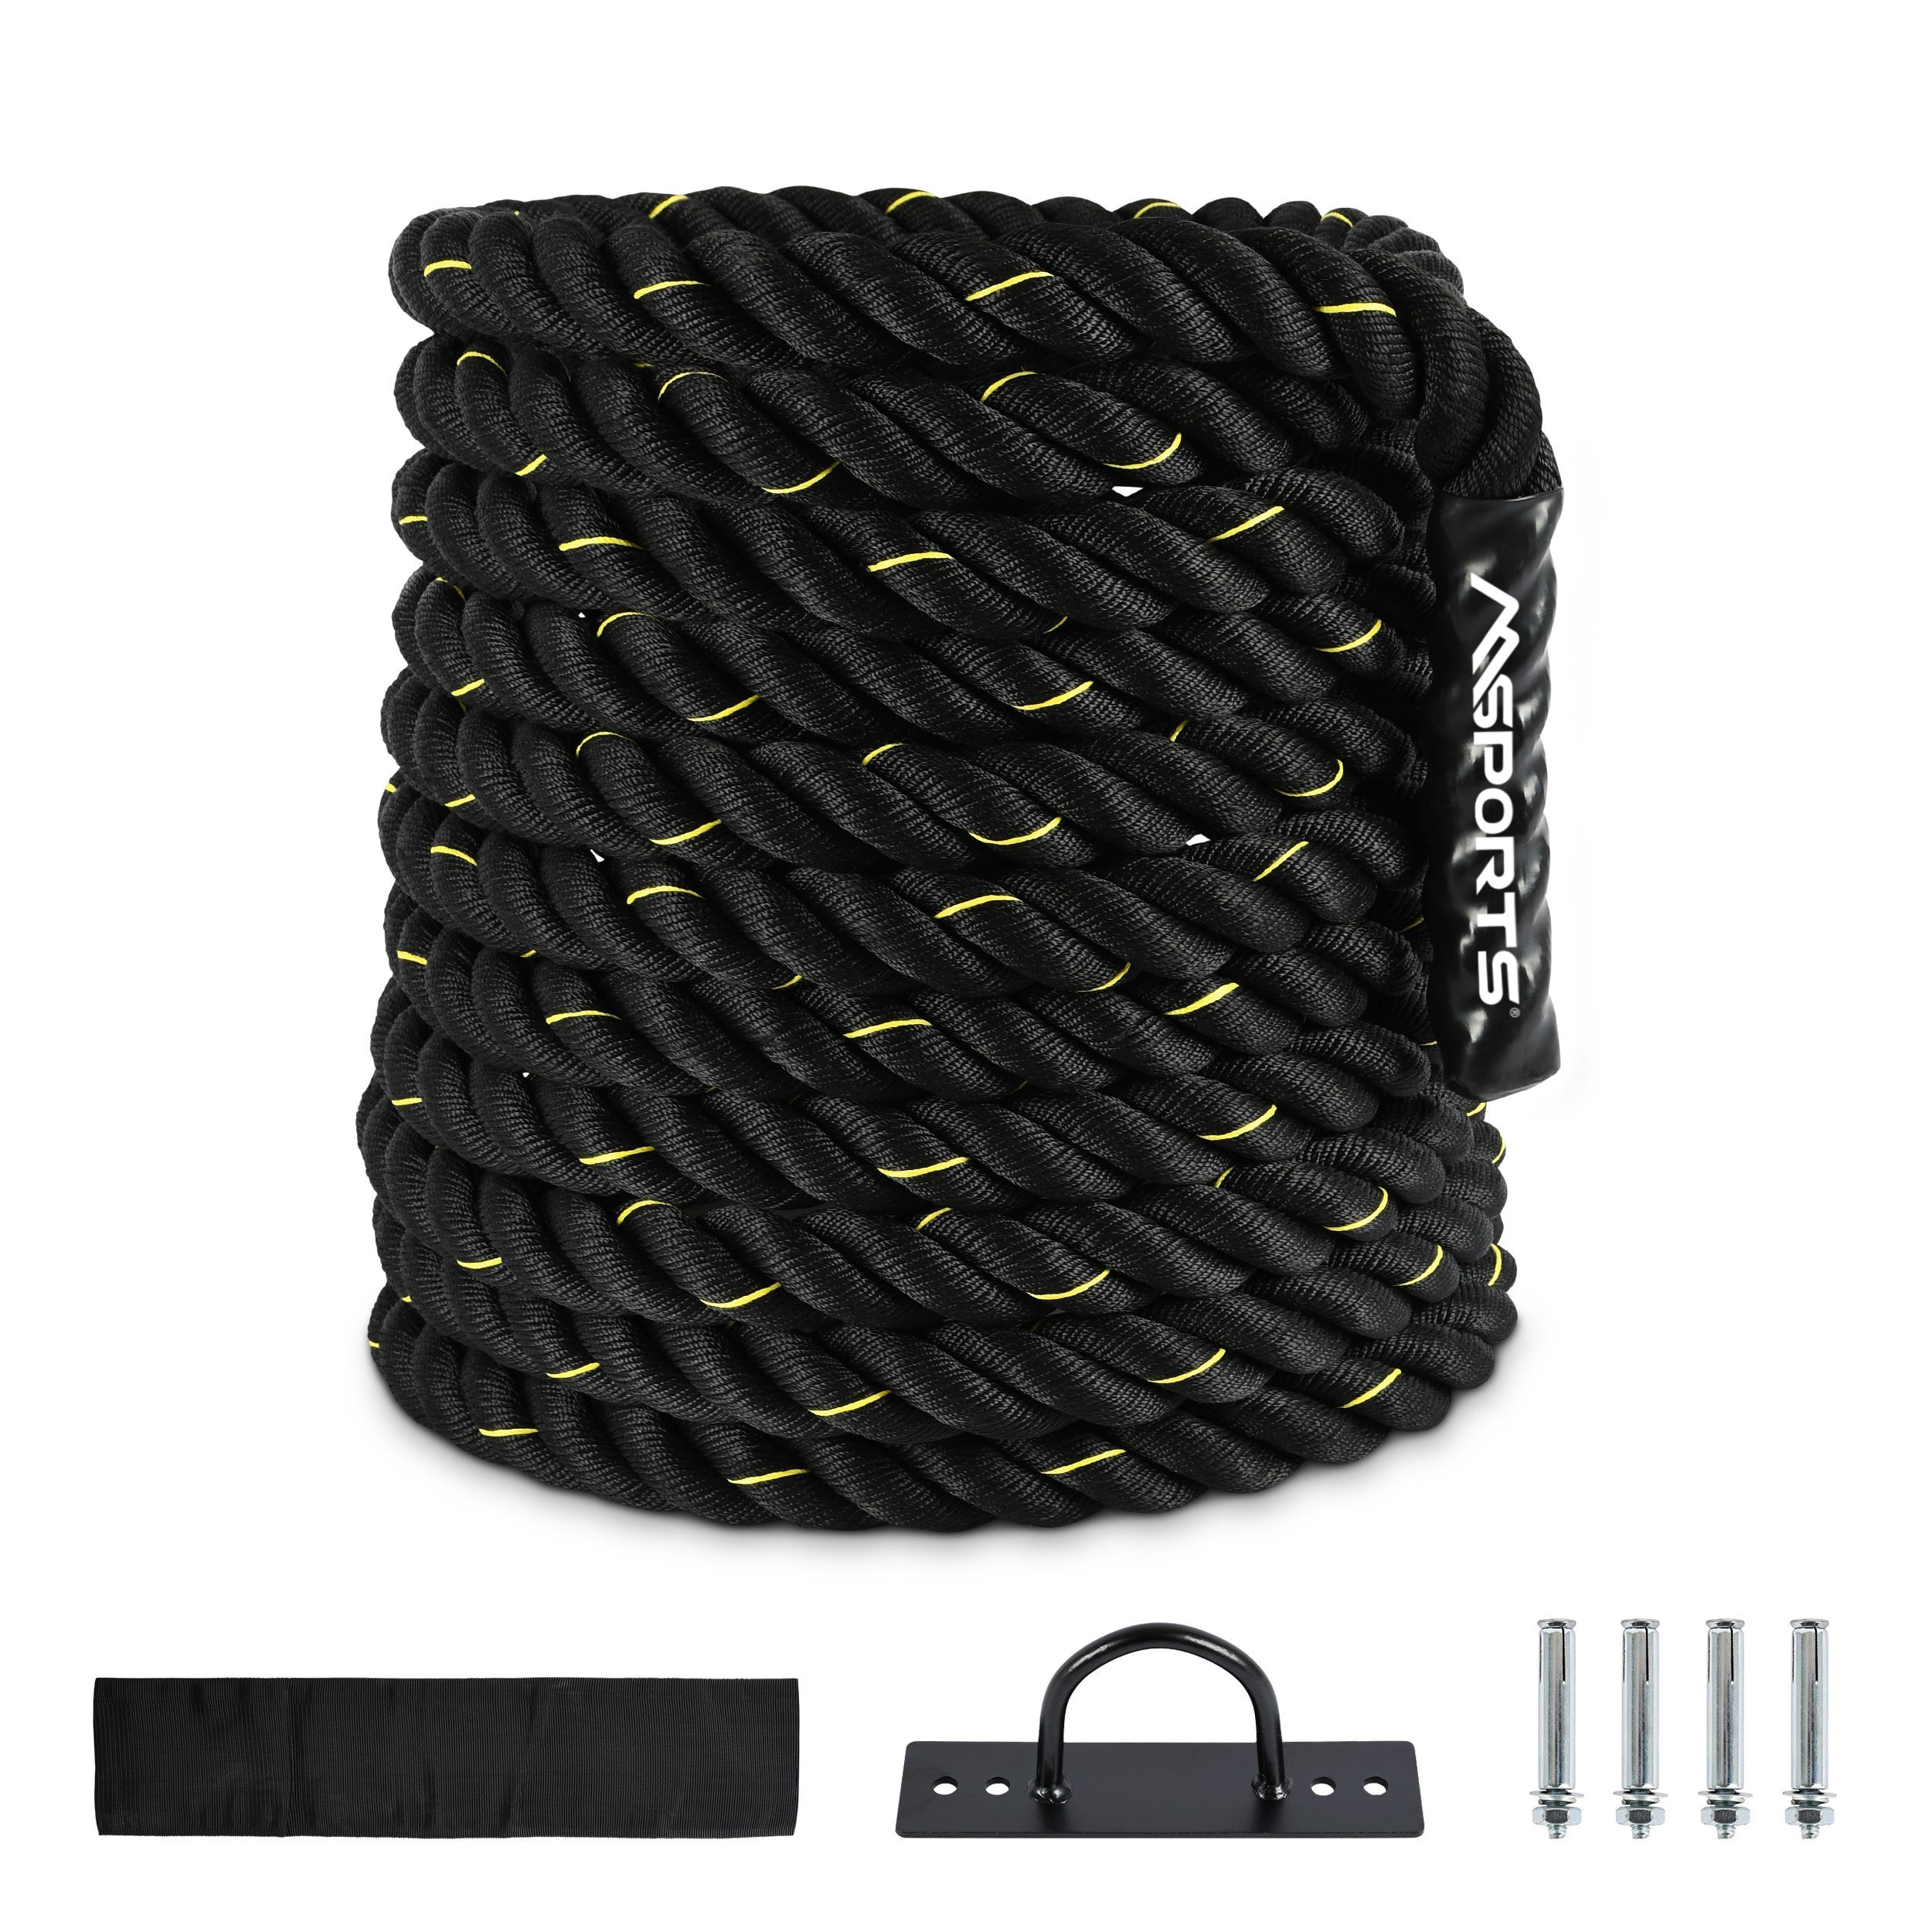 MSports® Battle Rope Professional m Schwarz-Gelb Rope Qualität, Studio 15 Battle Länge